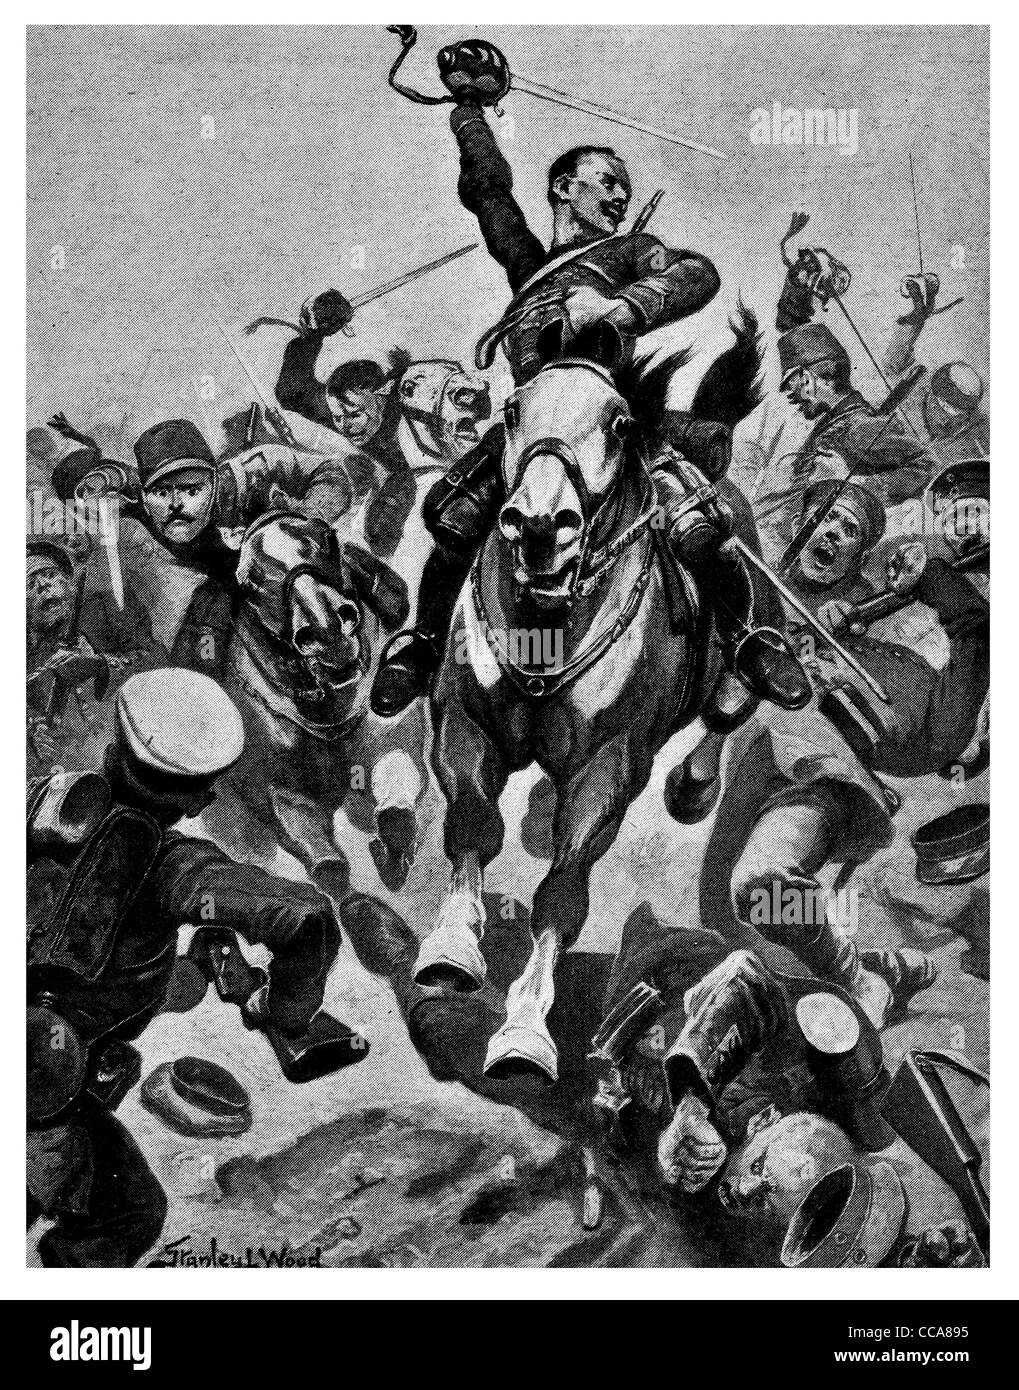 1916 cavalerie française attaqué 200 Allemands avec Sabre lance gloire colère charge cheval poignarder mortellement blessé slash sabre officier Banque D'Images